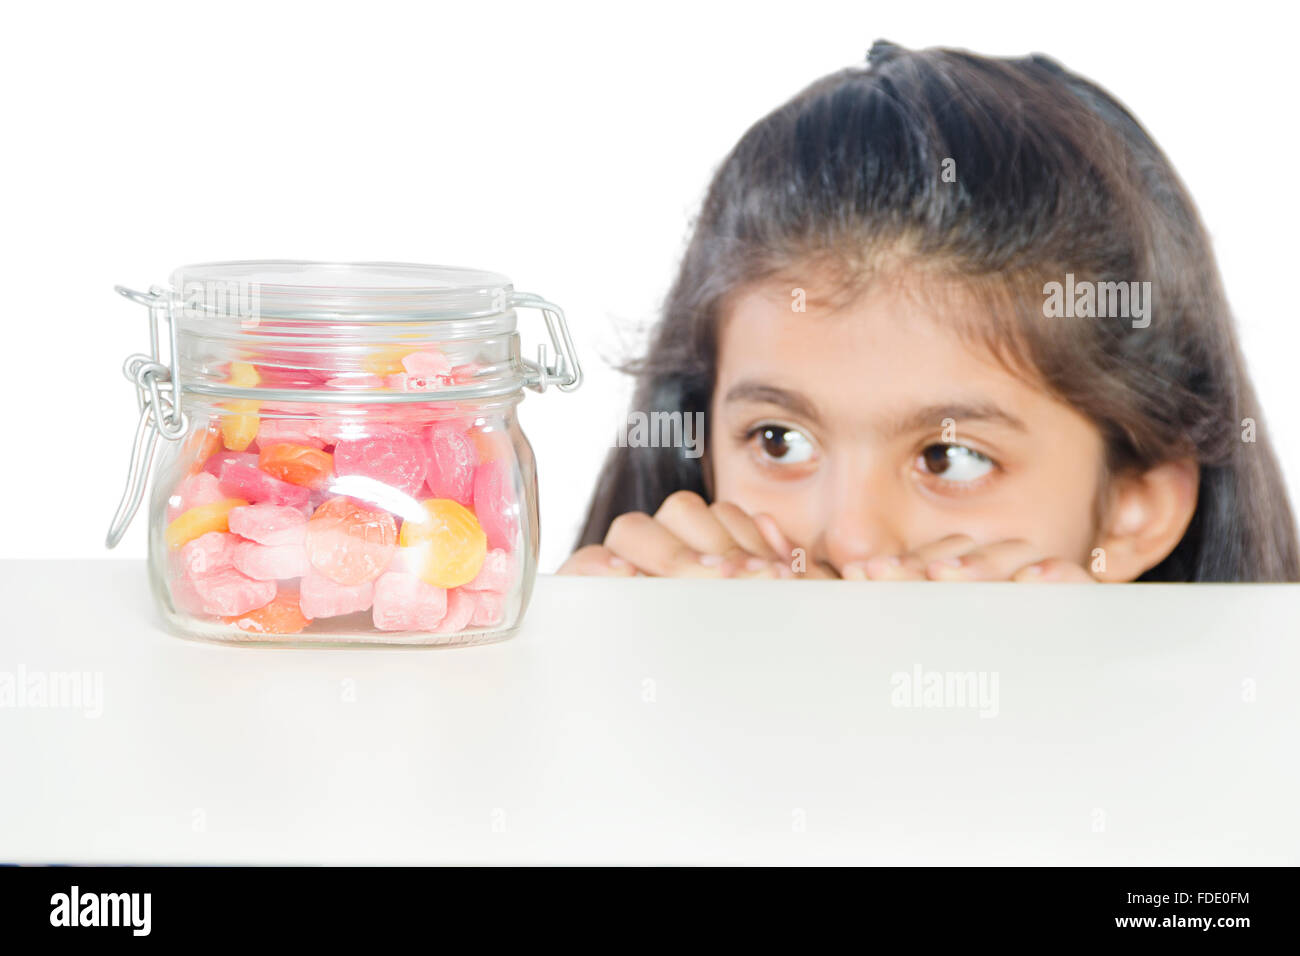 1 persona solo candy close-up ragazza deliziosa jar kid peeking prelievo di tentazione Foto Stock